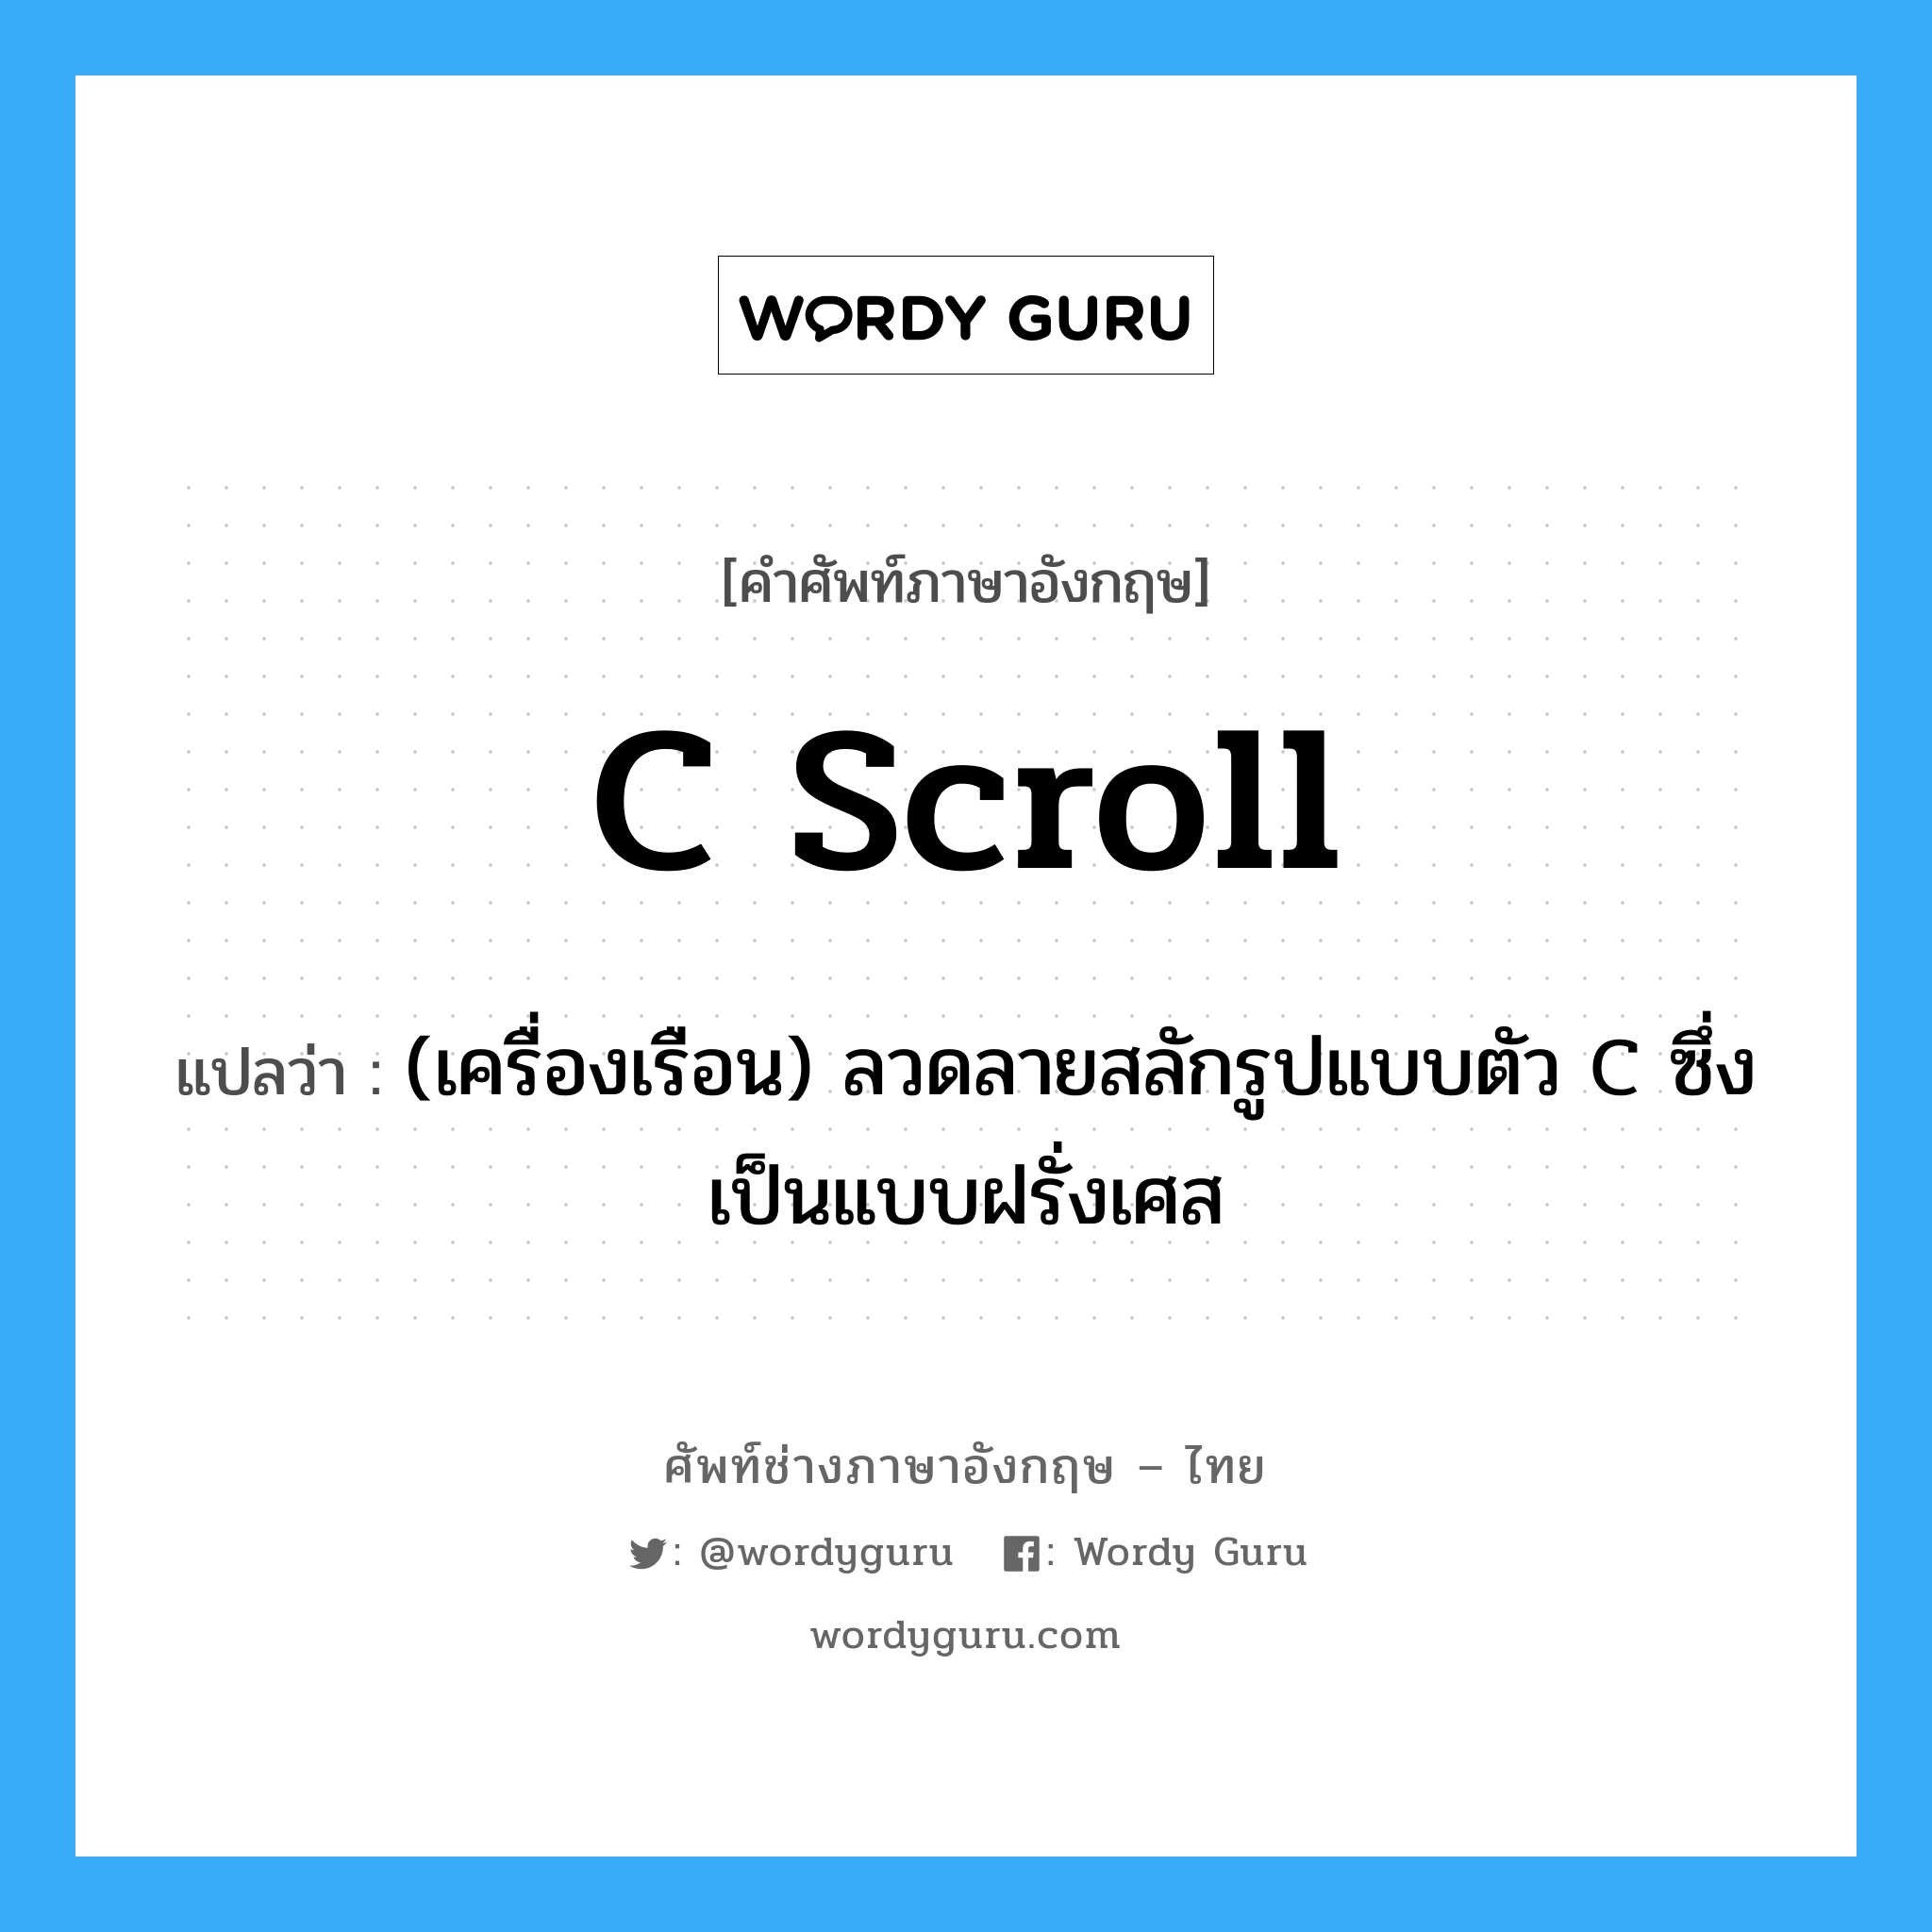 C scroll แปลว่า?, คำศัพท์ช่างภาษาอังกฤษ - ไทย C scroll คำศัพท์ภาษาอังกฤษ C scroll แปลว่า (เครื่องเรือน) ลวดลายสลักรูปแบบตัว C ซึ่งเป็นแบบฝรั่งเศส